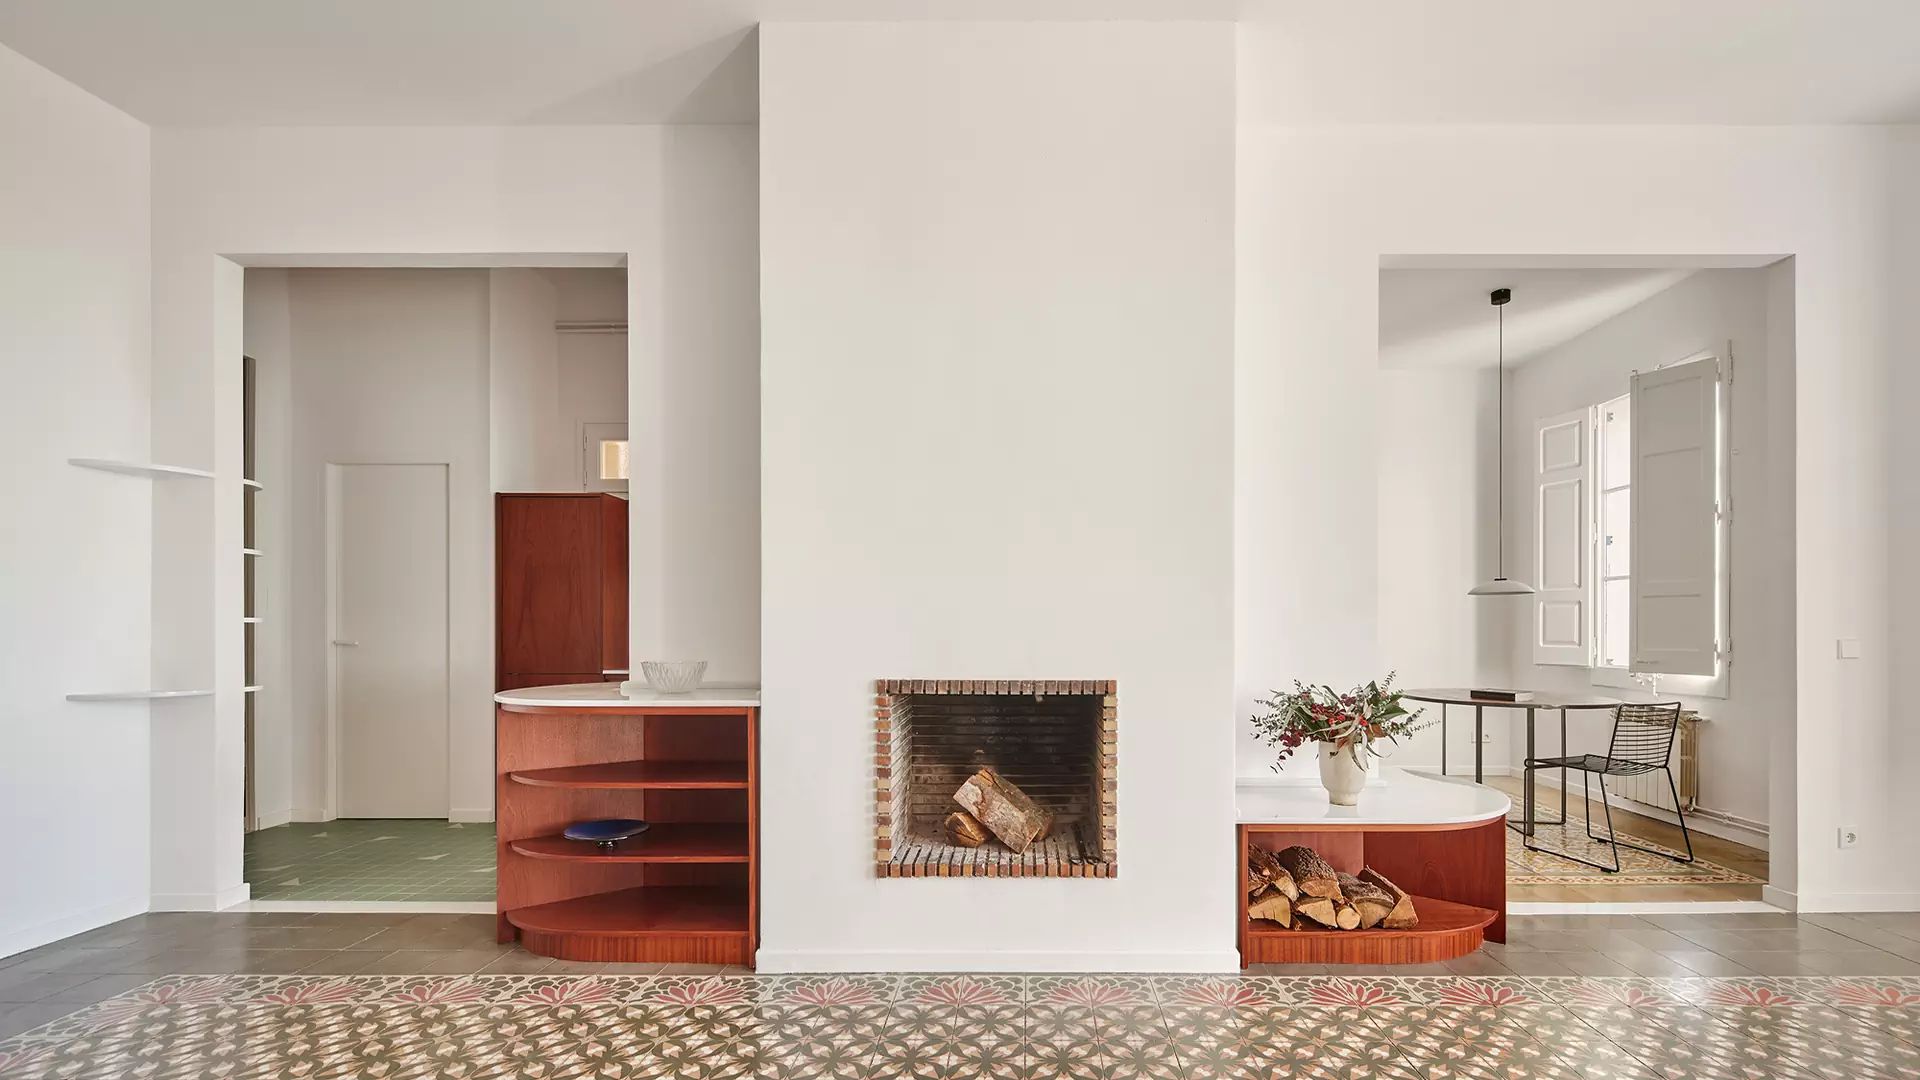 Двухцветный интерьер модернистской квартиры в Испании — проект Cierto Estudio